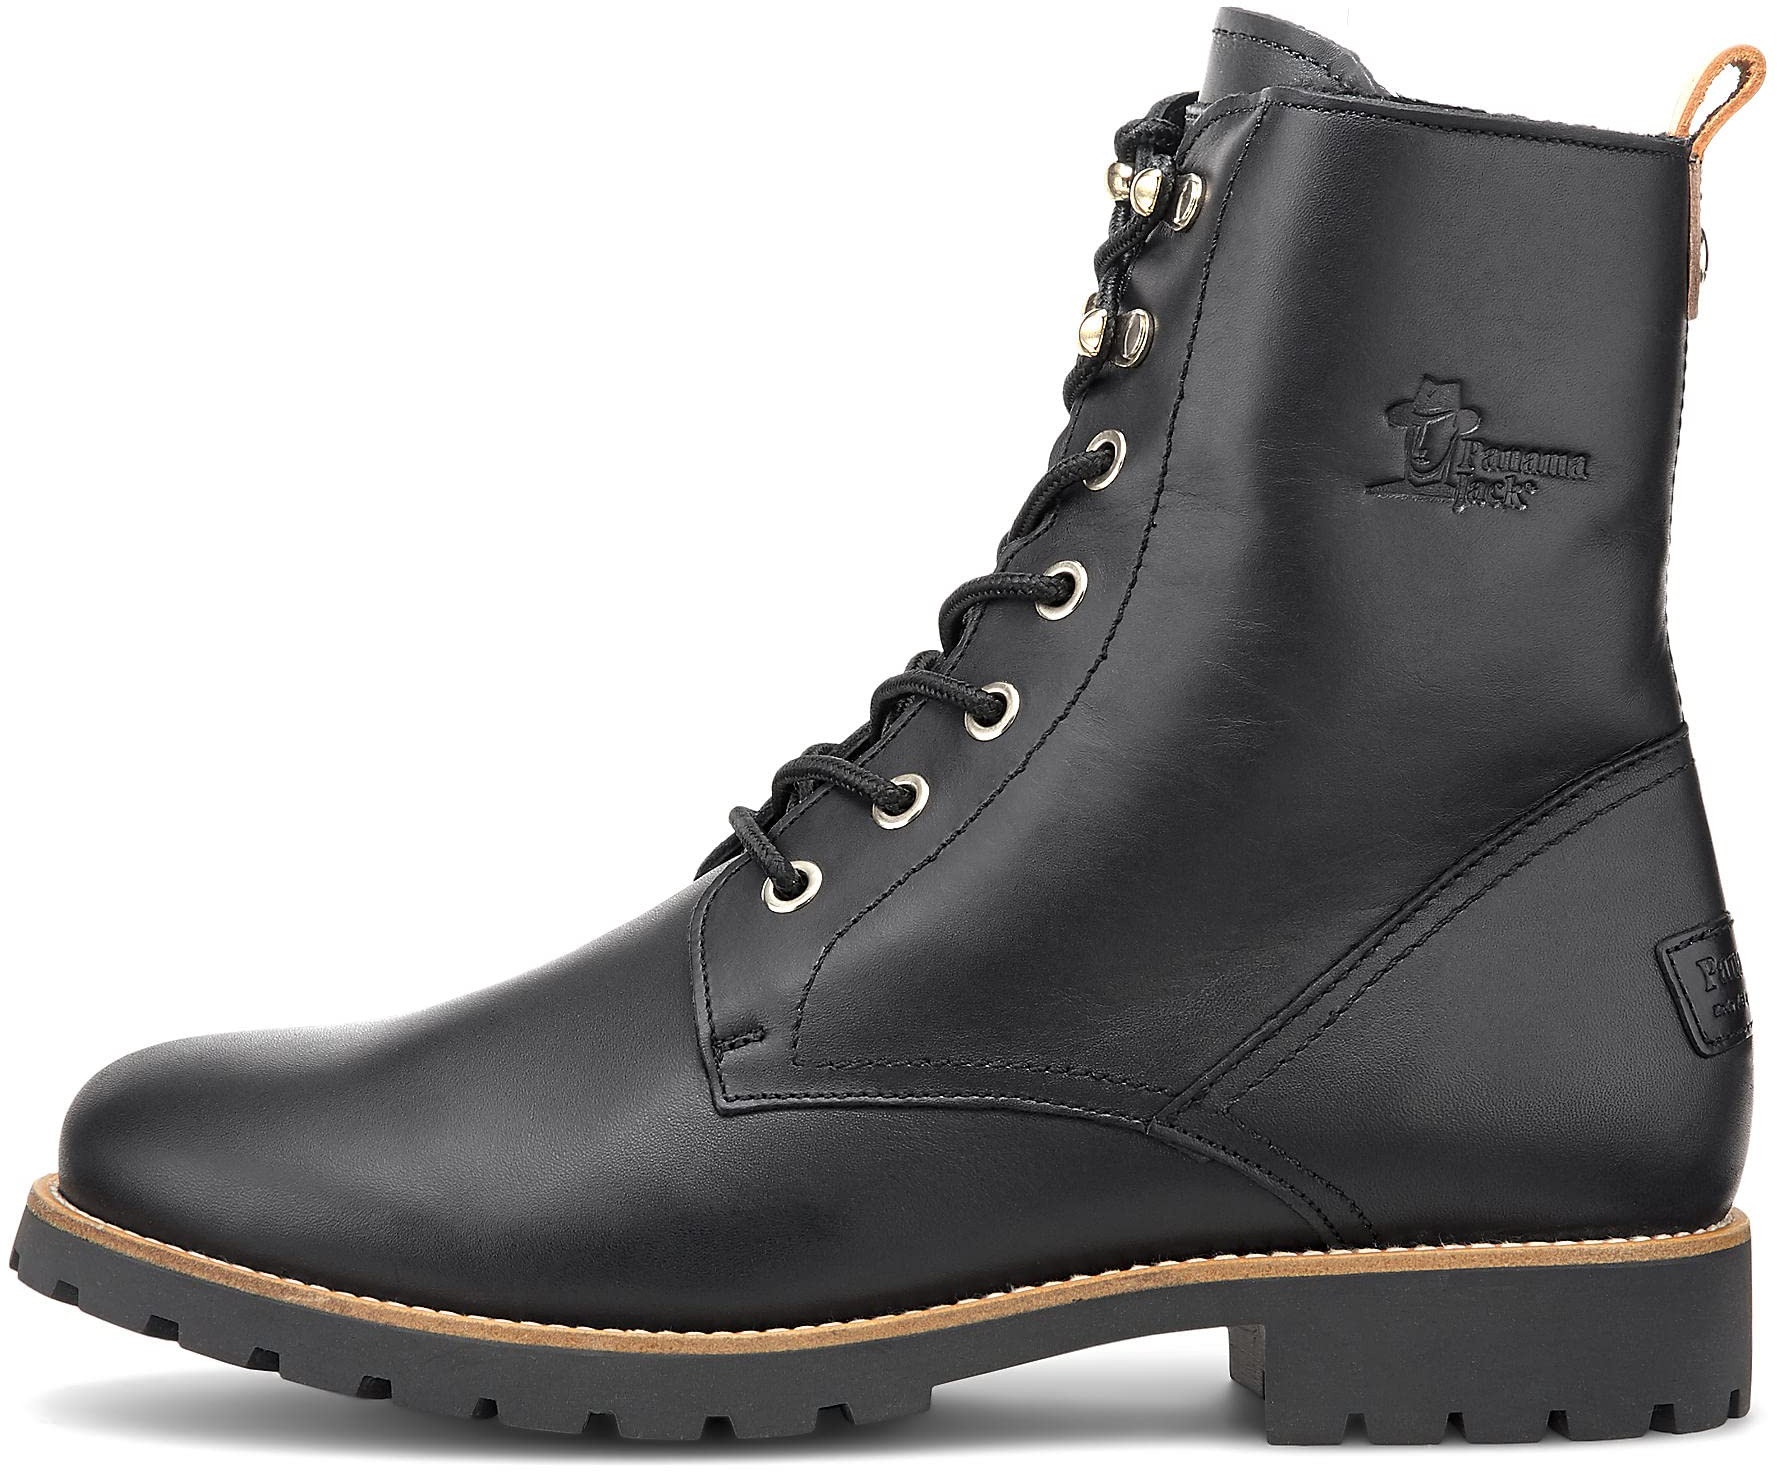 Panama Jack Herren Combat Boots Amur GTX, Männer Stiefeletten,Schnürsenkel,schnürstiefel,boots,stiefel,bootee,booties,Schwarz,38 EU / 5 UK - 38 EU